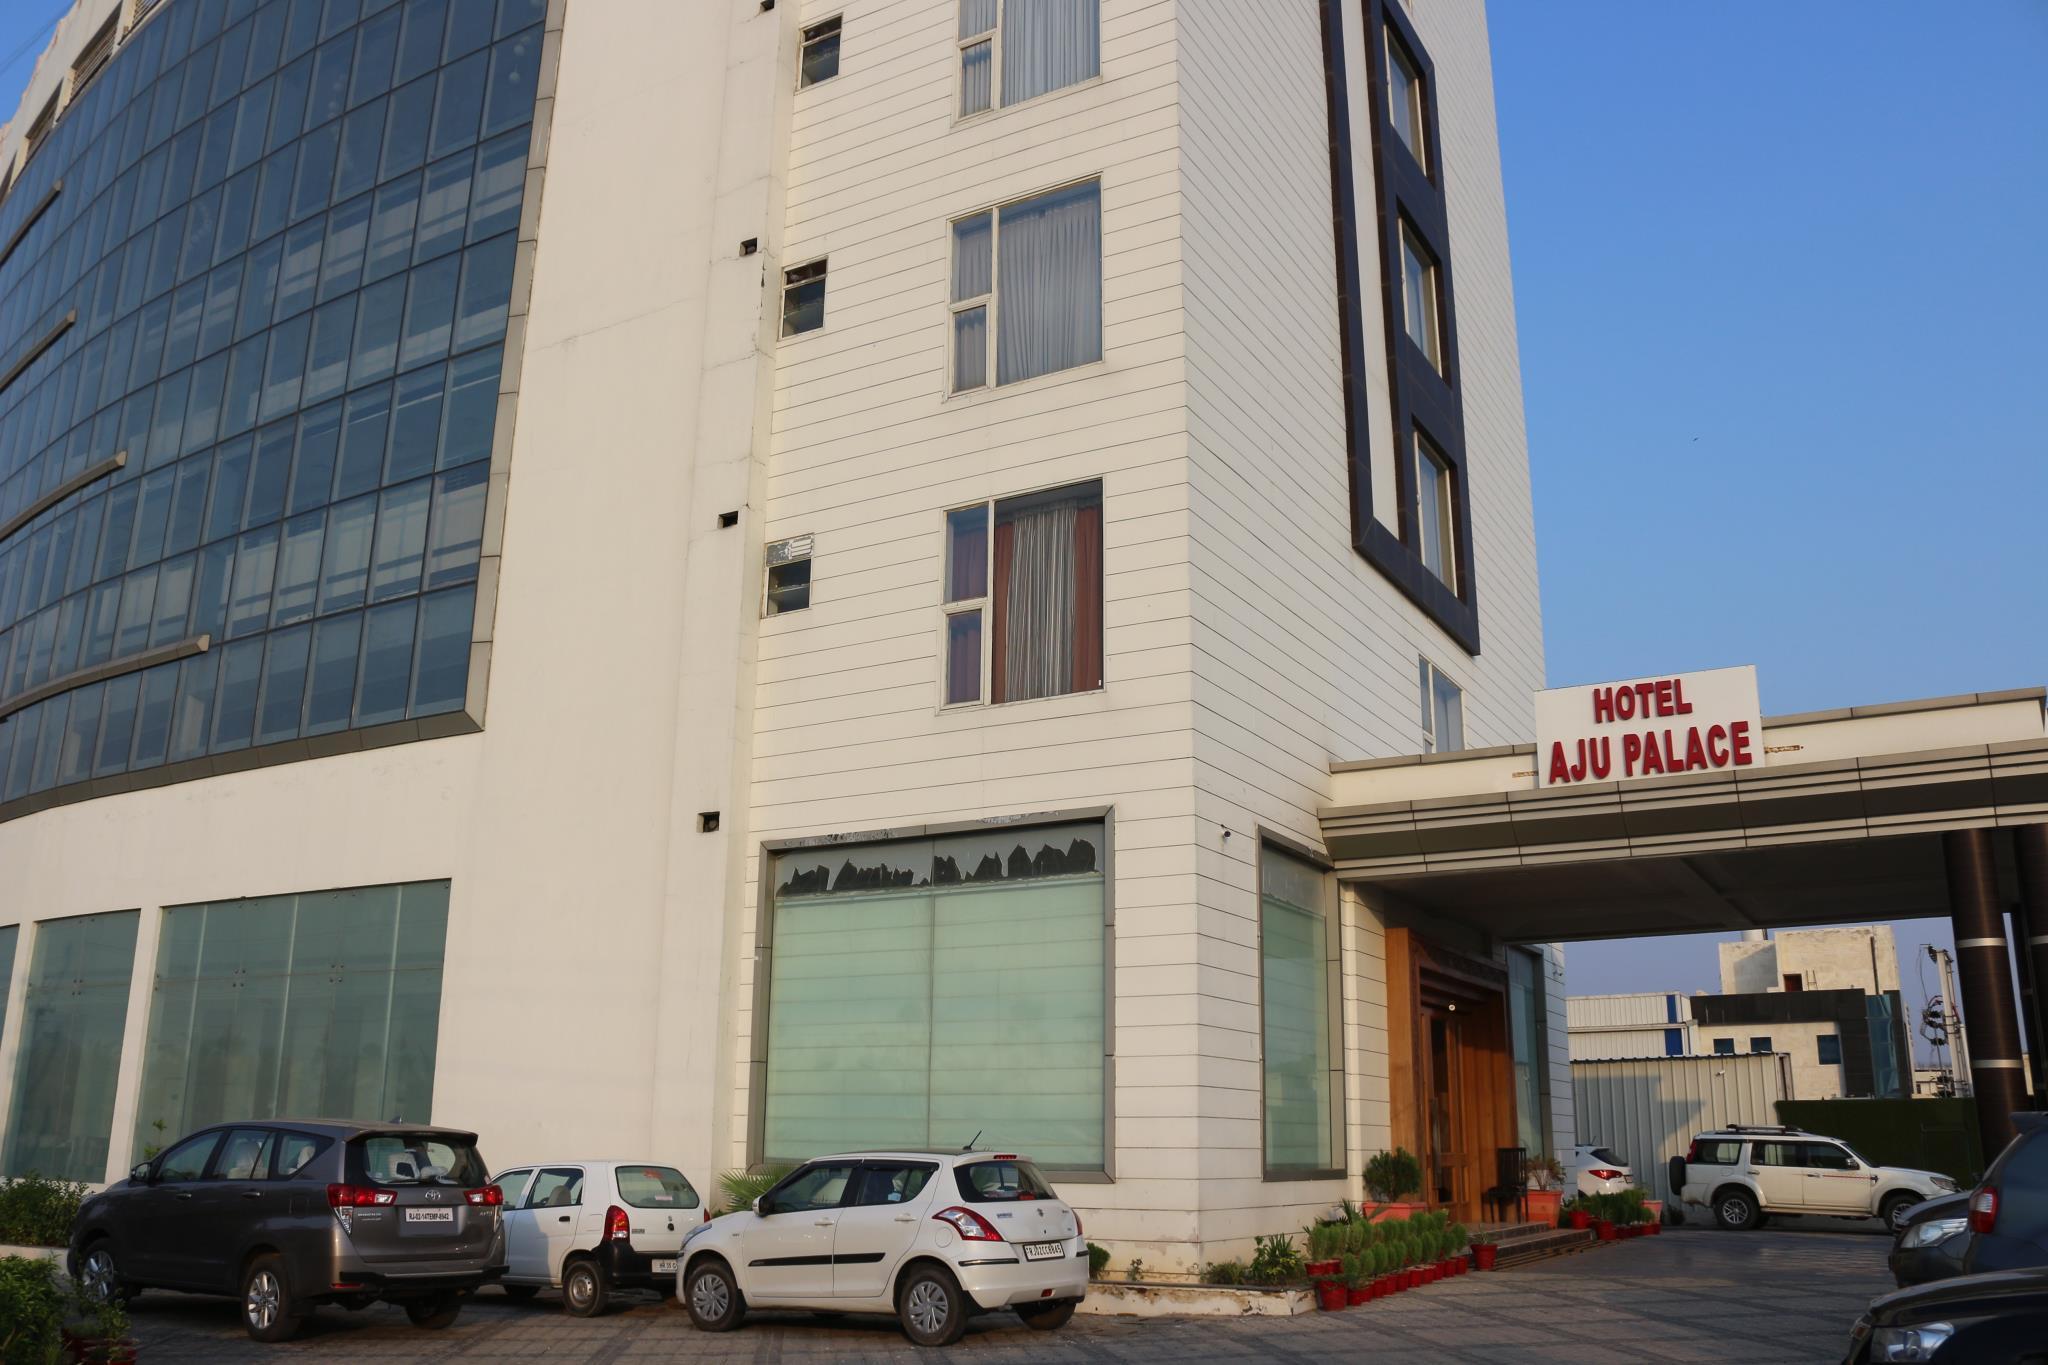 Hotel Aju Palace - Behror